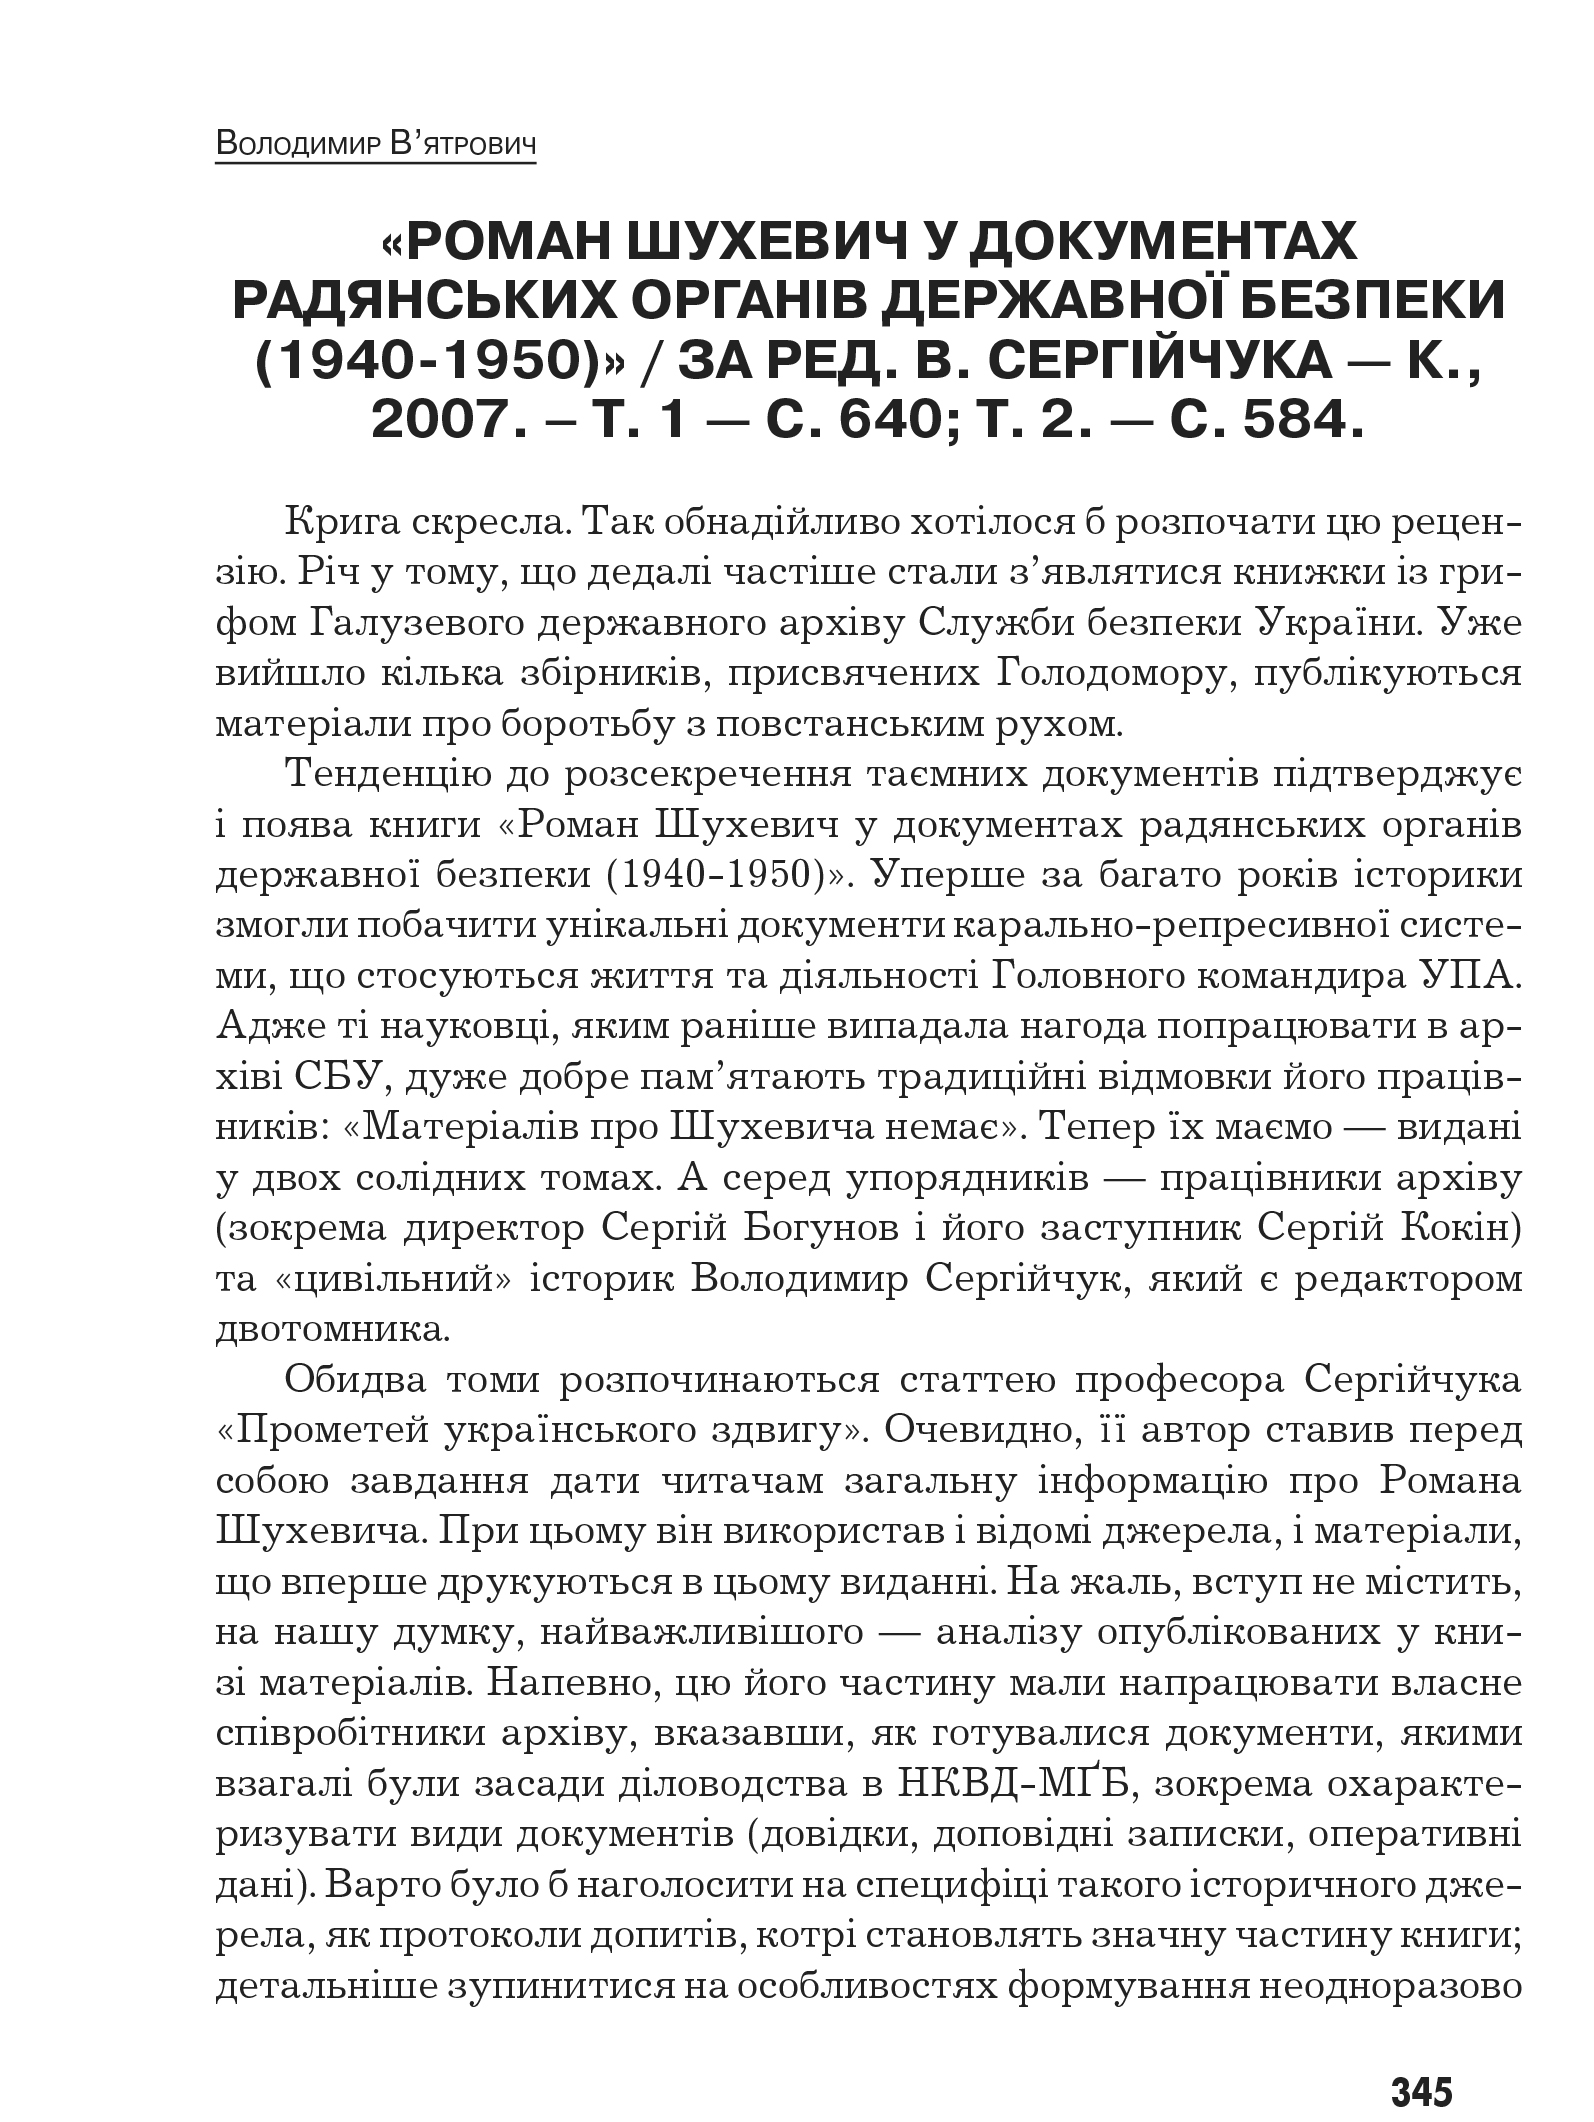 Український визвольний рух №10, ст. 345 - 347